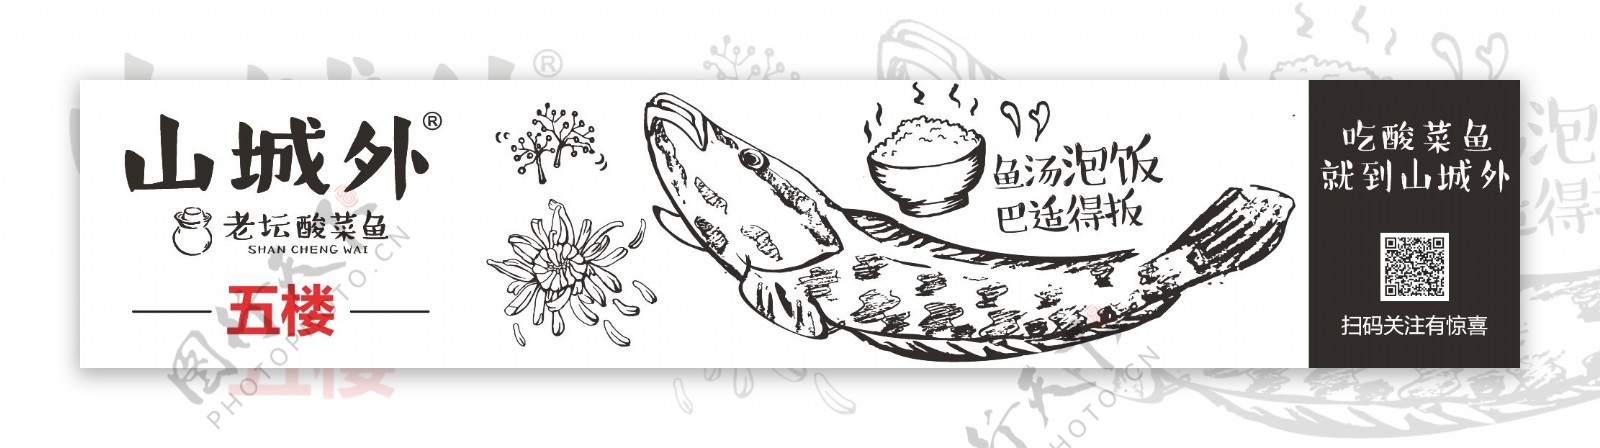 酸菜鱼广告画面宣传卡通